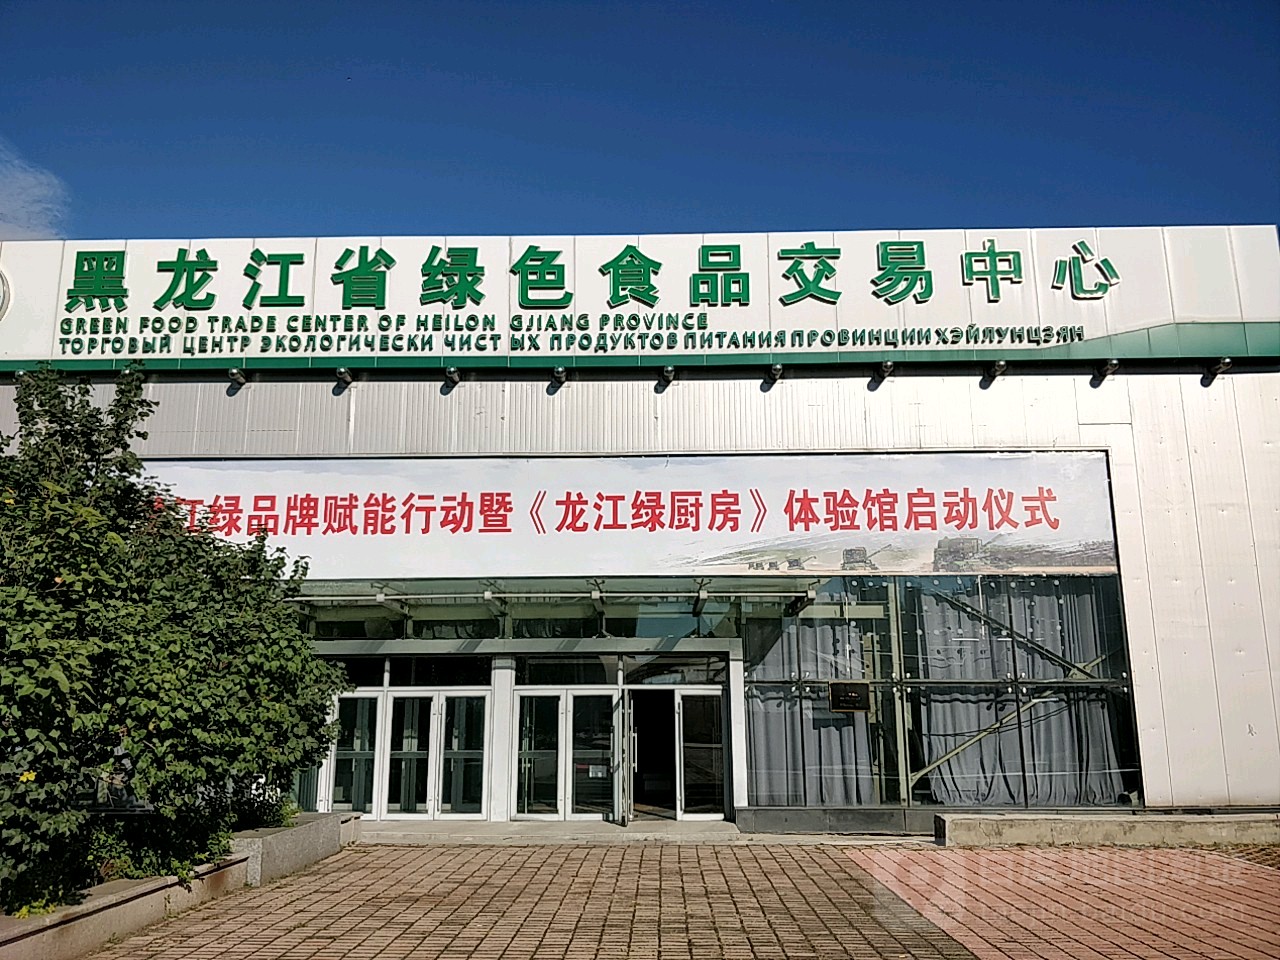 黑龙江省绿色食品交易中心